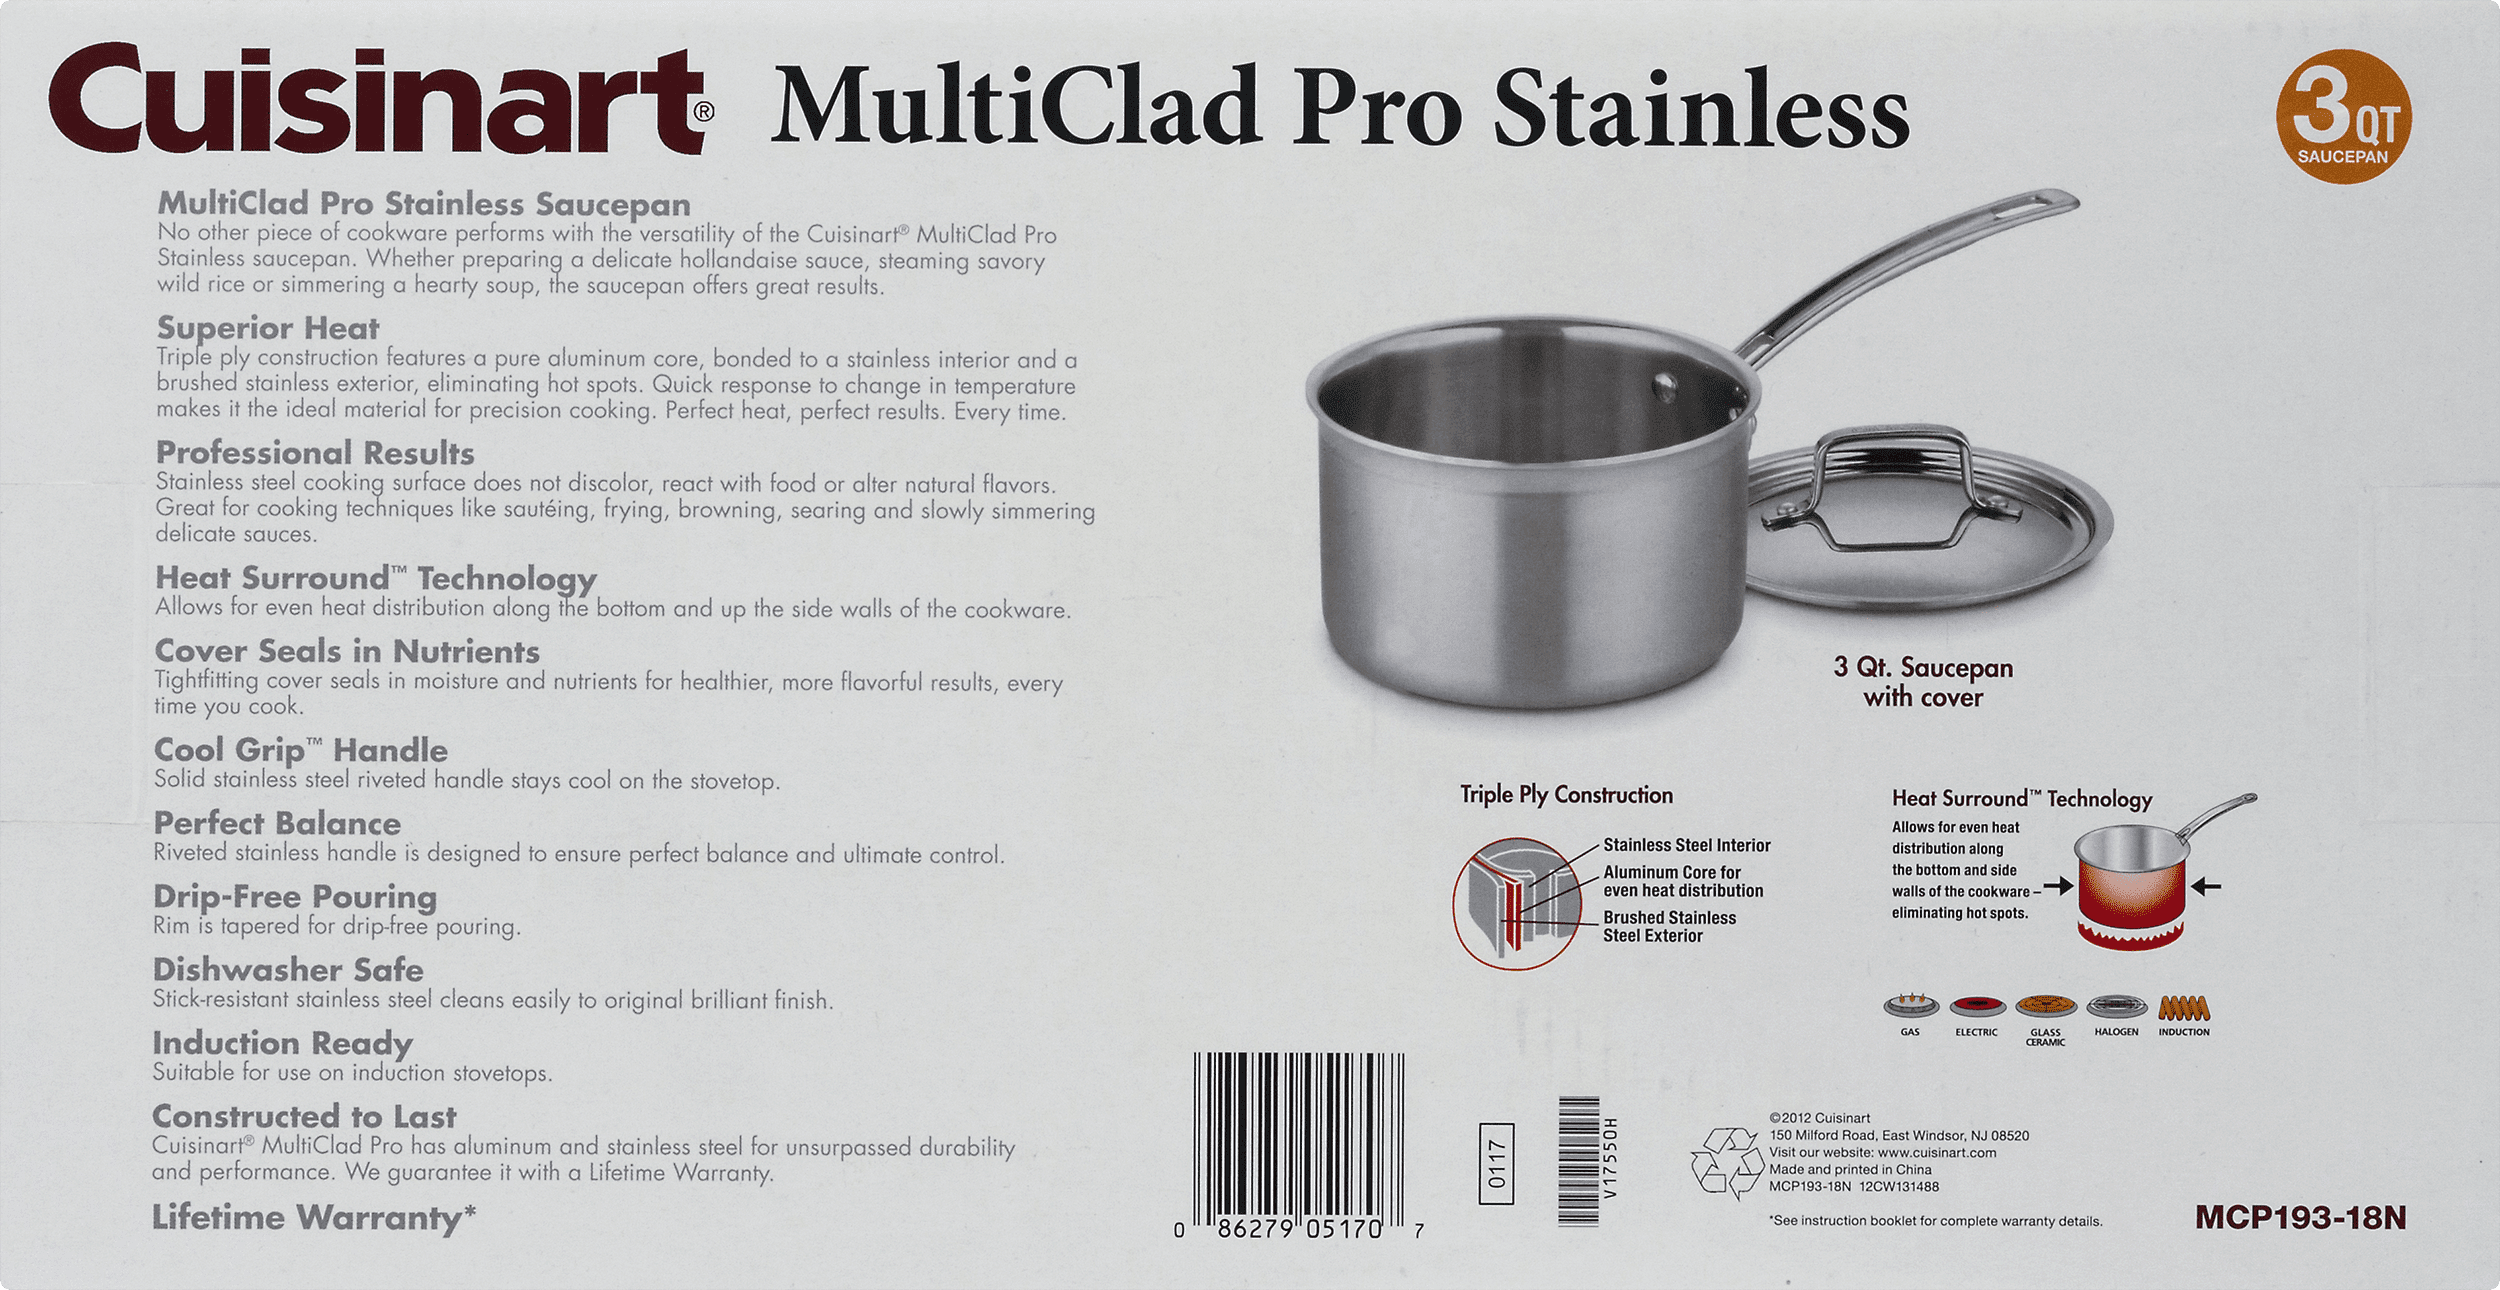 MultiClad Pro Triple Ply Stainless Cookware 3.5 Quart Sauté Pan